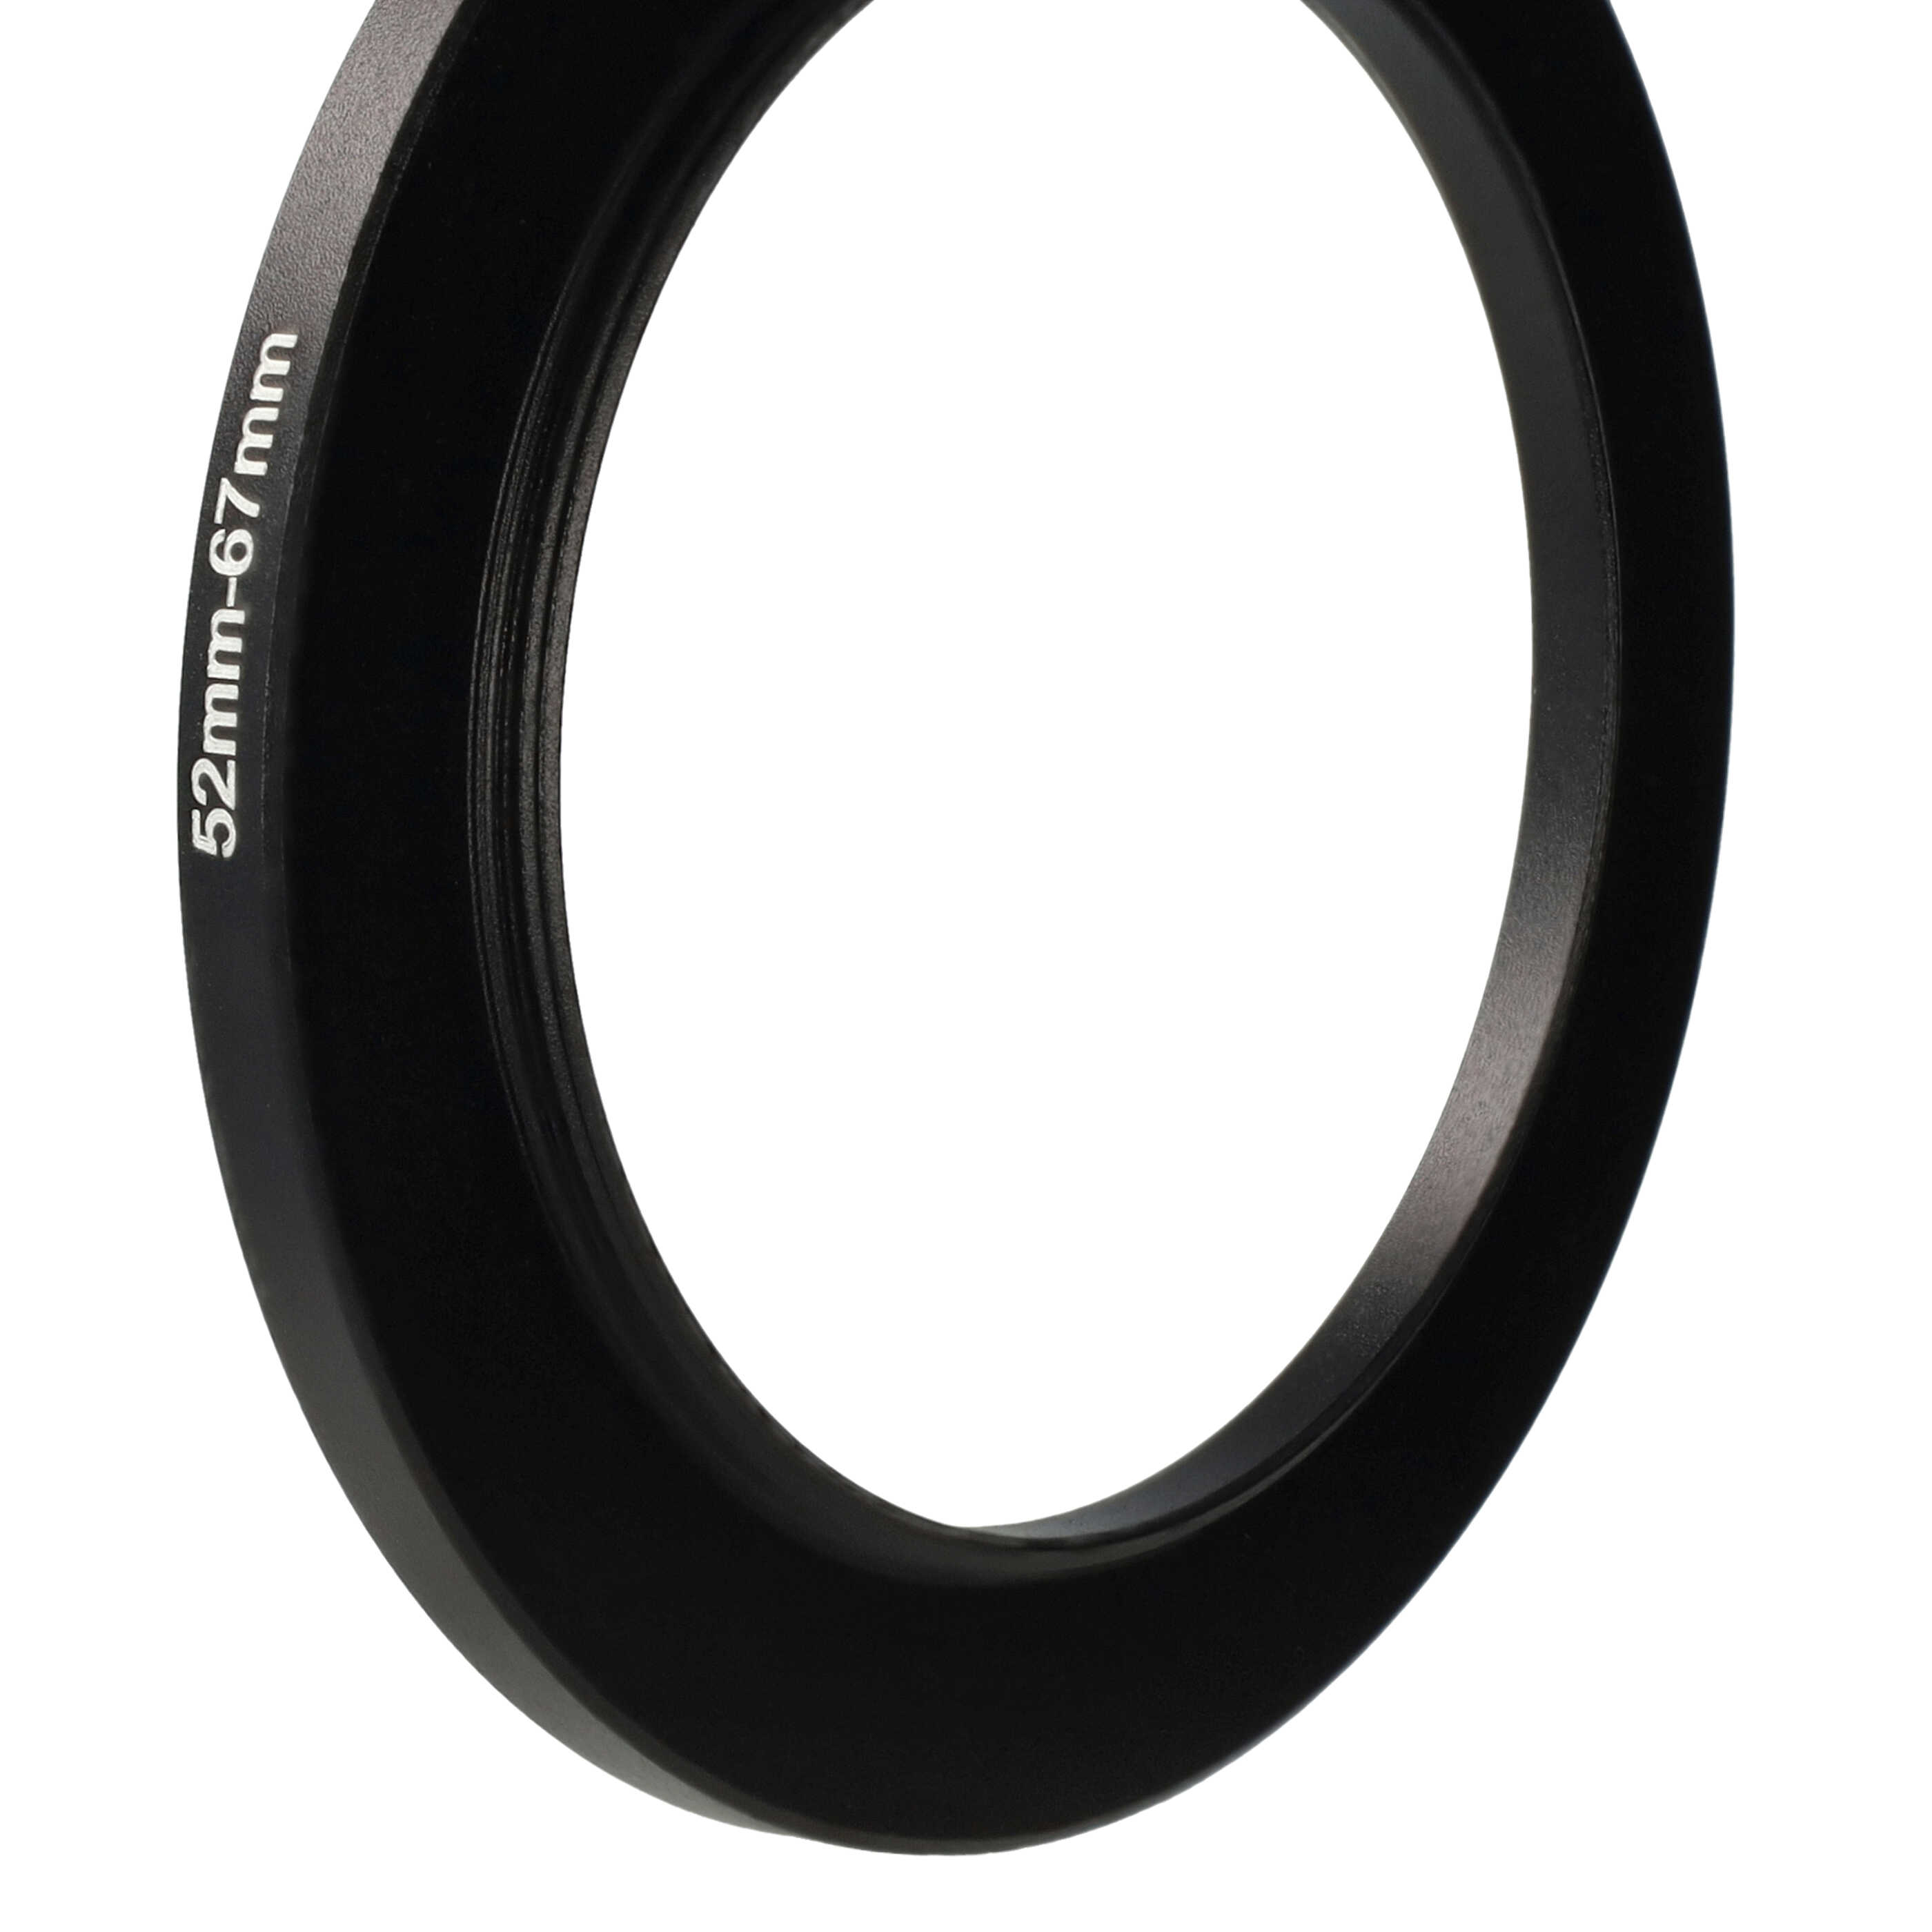 Step-Up-Ring Adapter 52 mm auf 67 mm passend für diverse Kamera-Objektive - Filteradapter